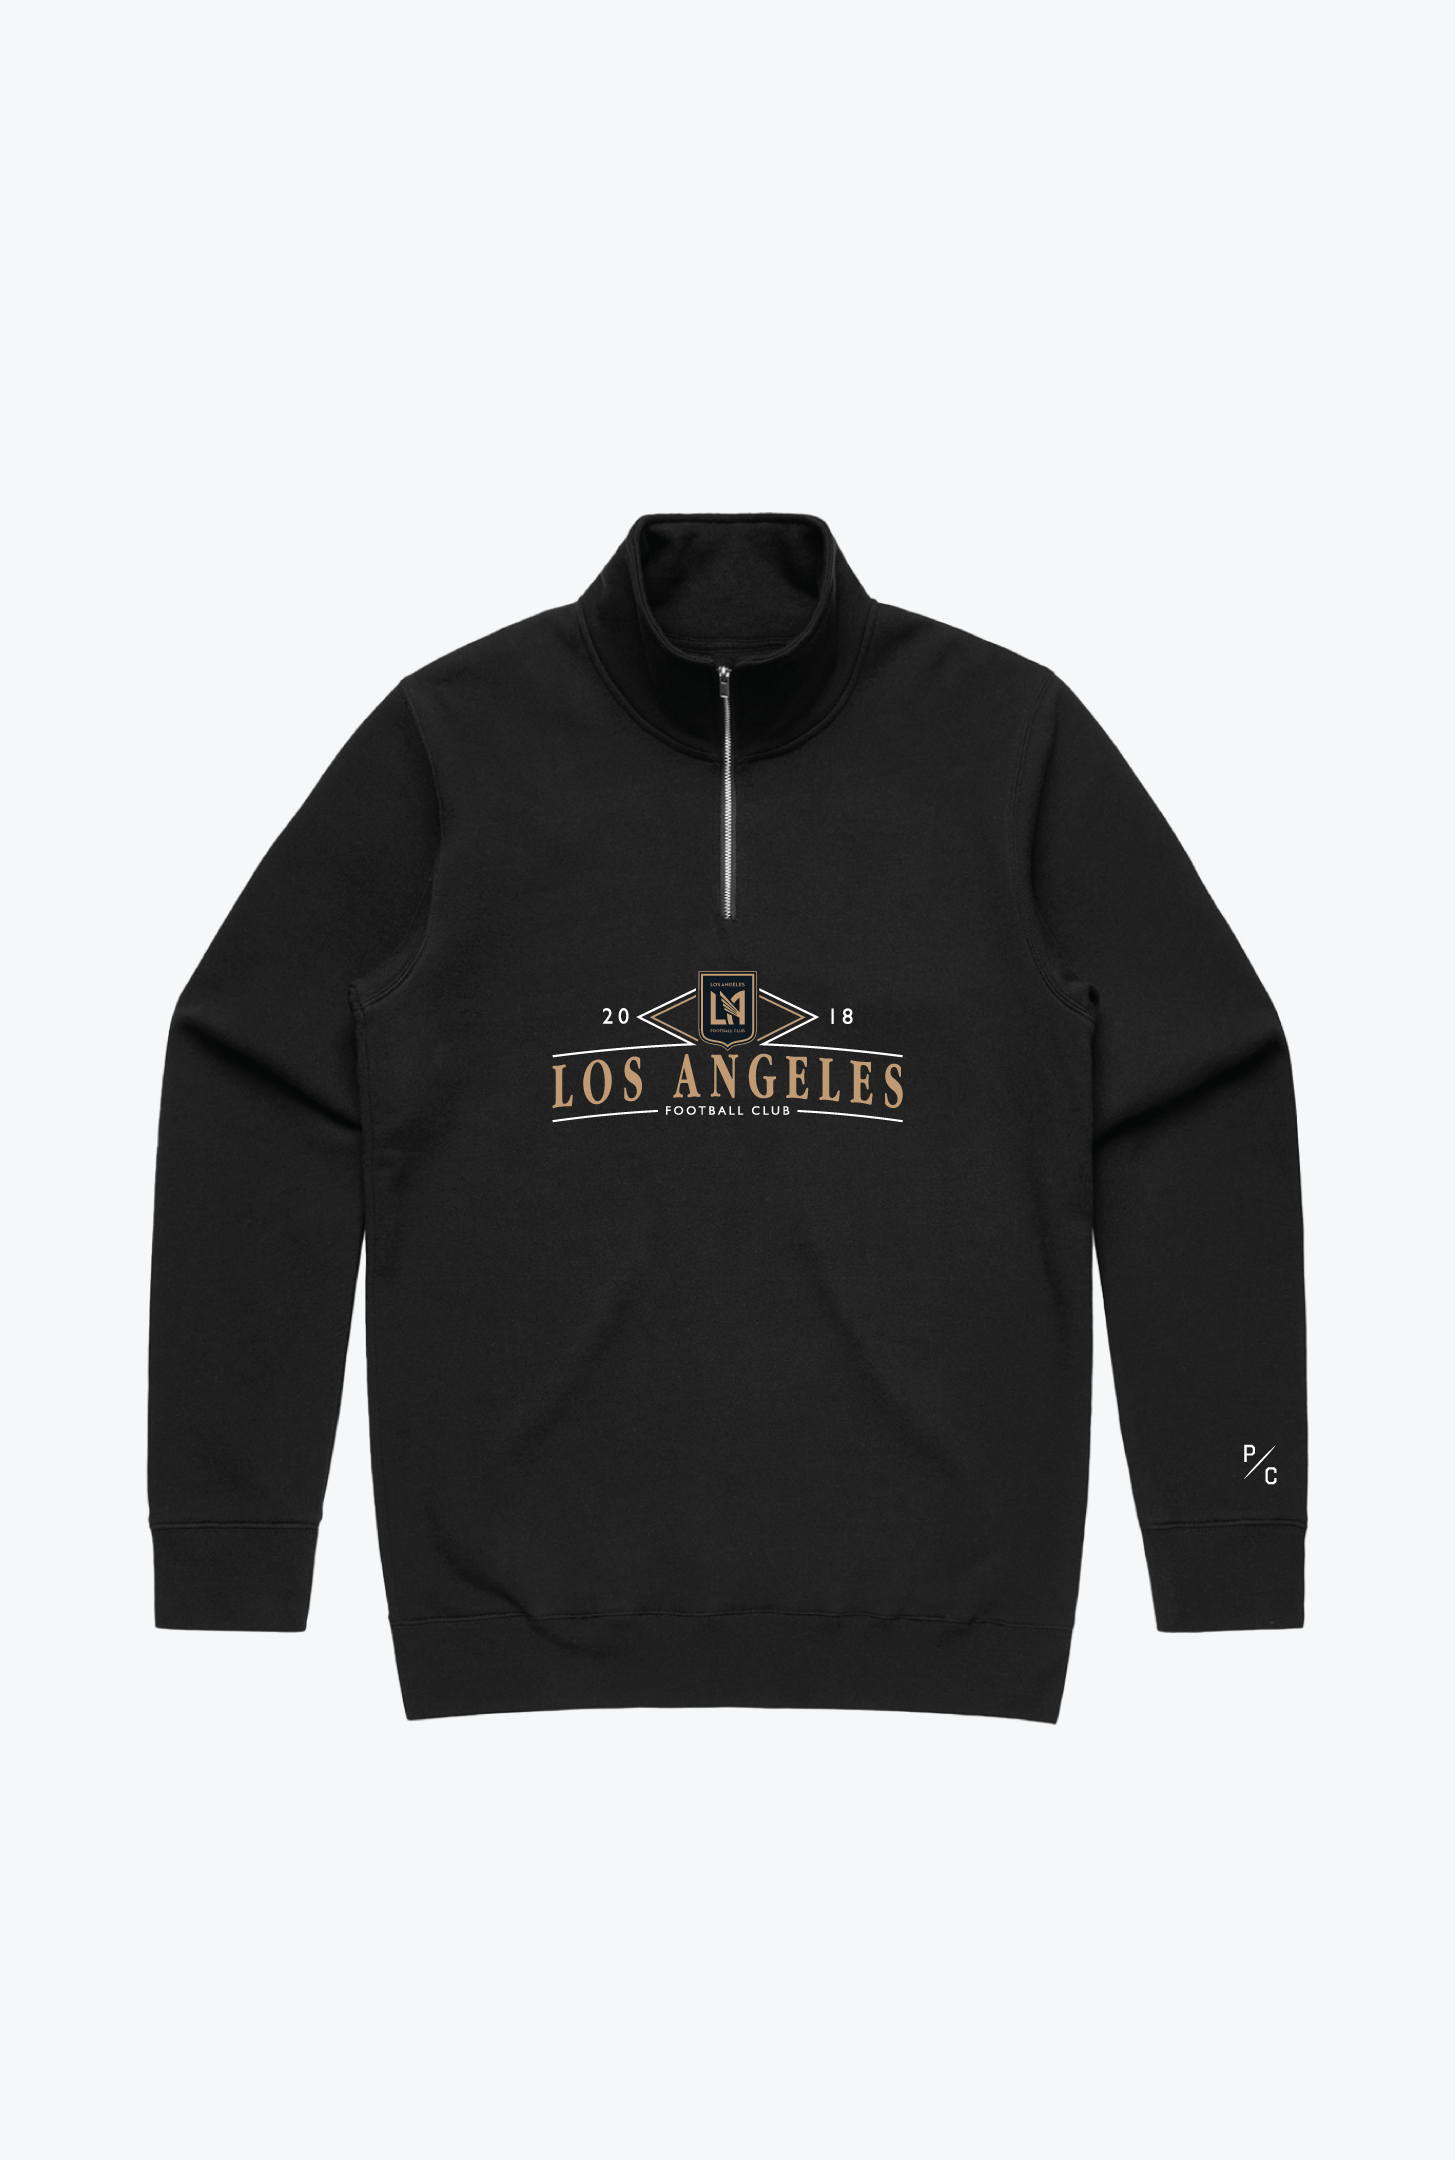 Los Angeles FC Vintage 1/4 Zip - Black